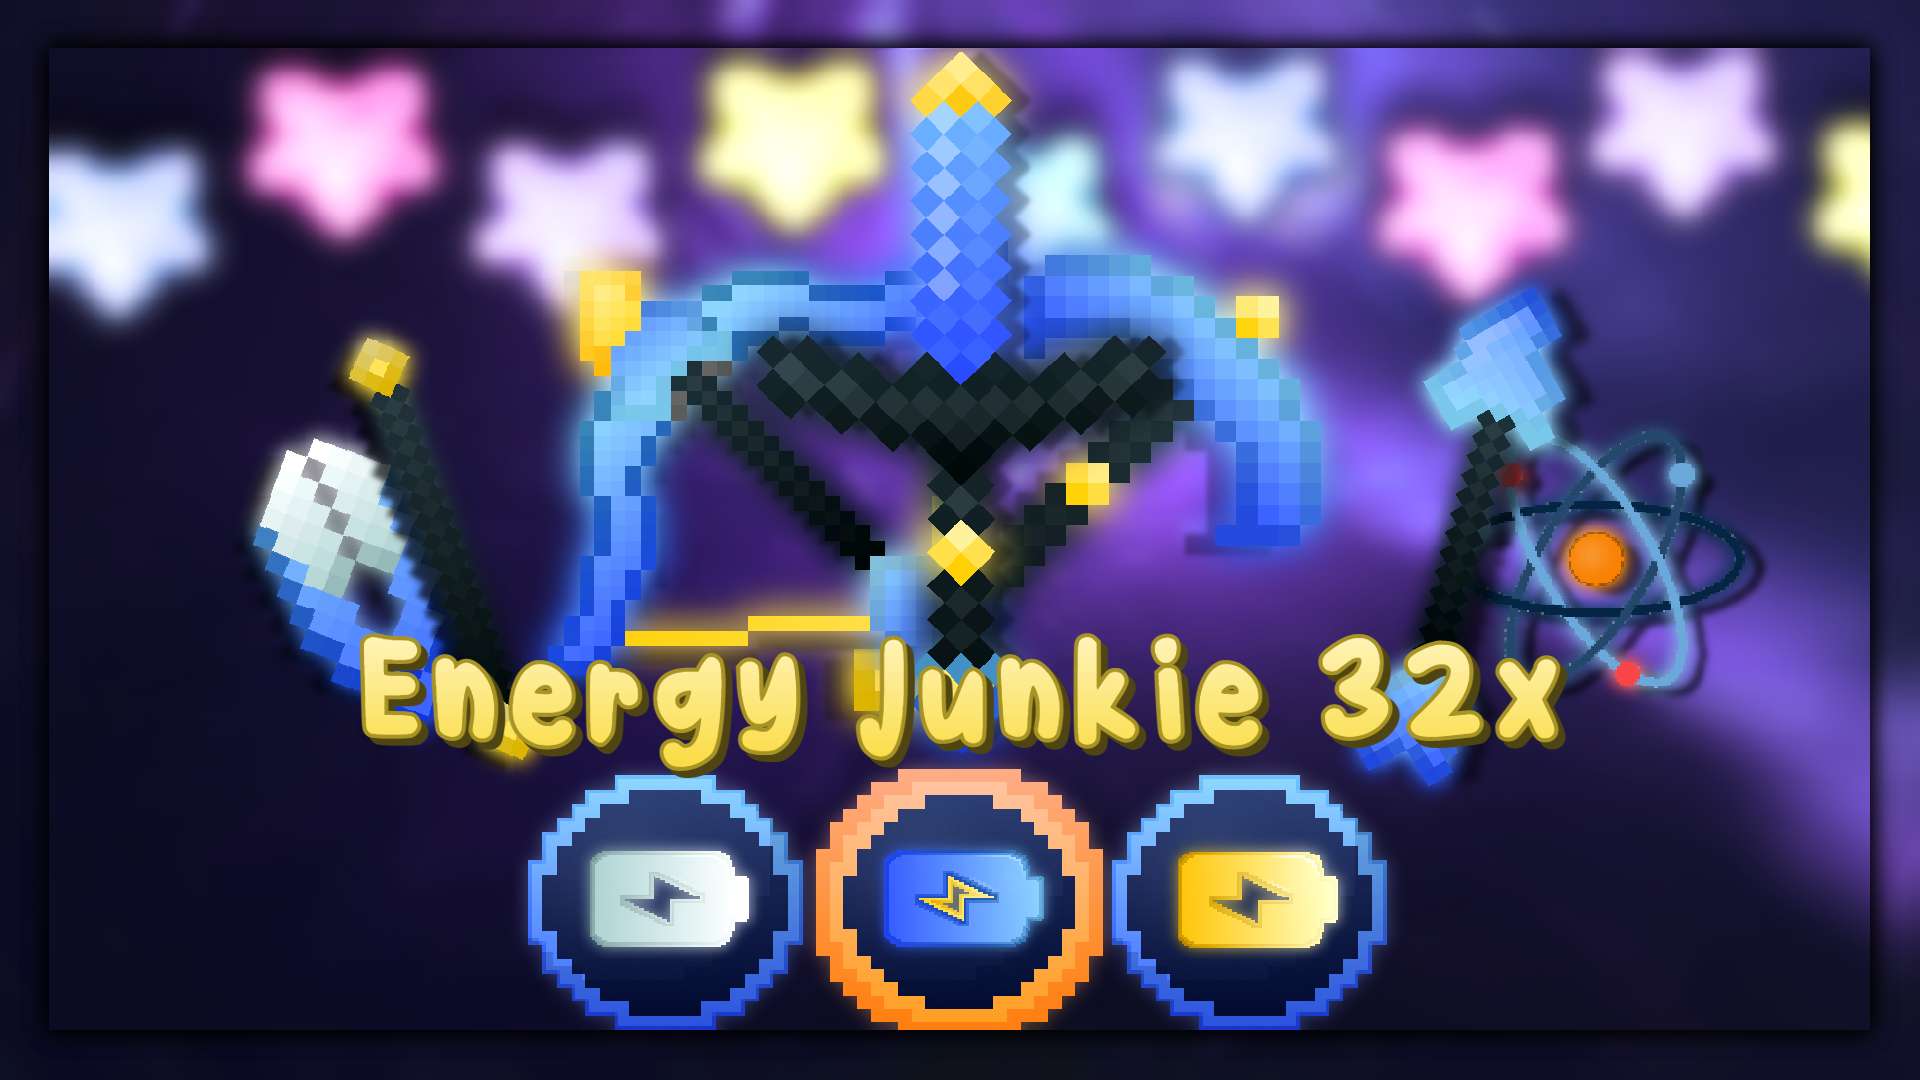 Energy Junkie 32x by khamdandelion on PvPRP